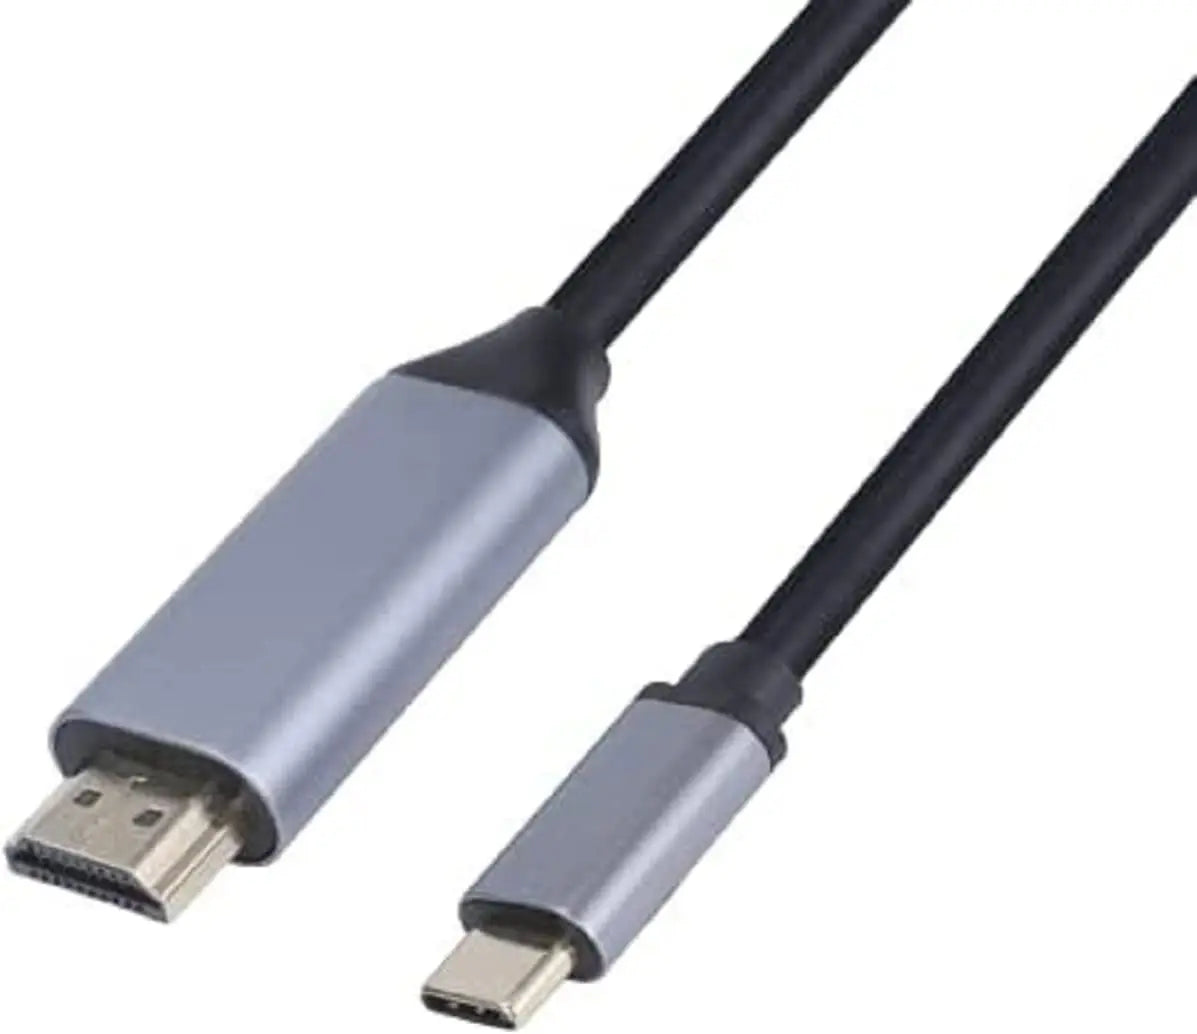  CY USB C a HDMI Adaptador 4K Cable USB Tipo-C a HDMI